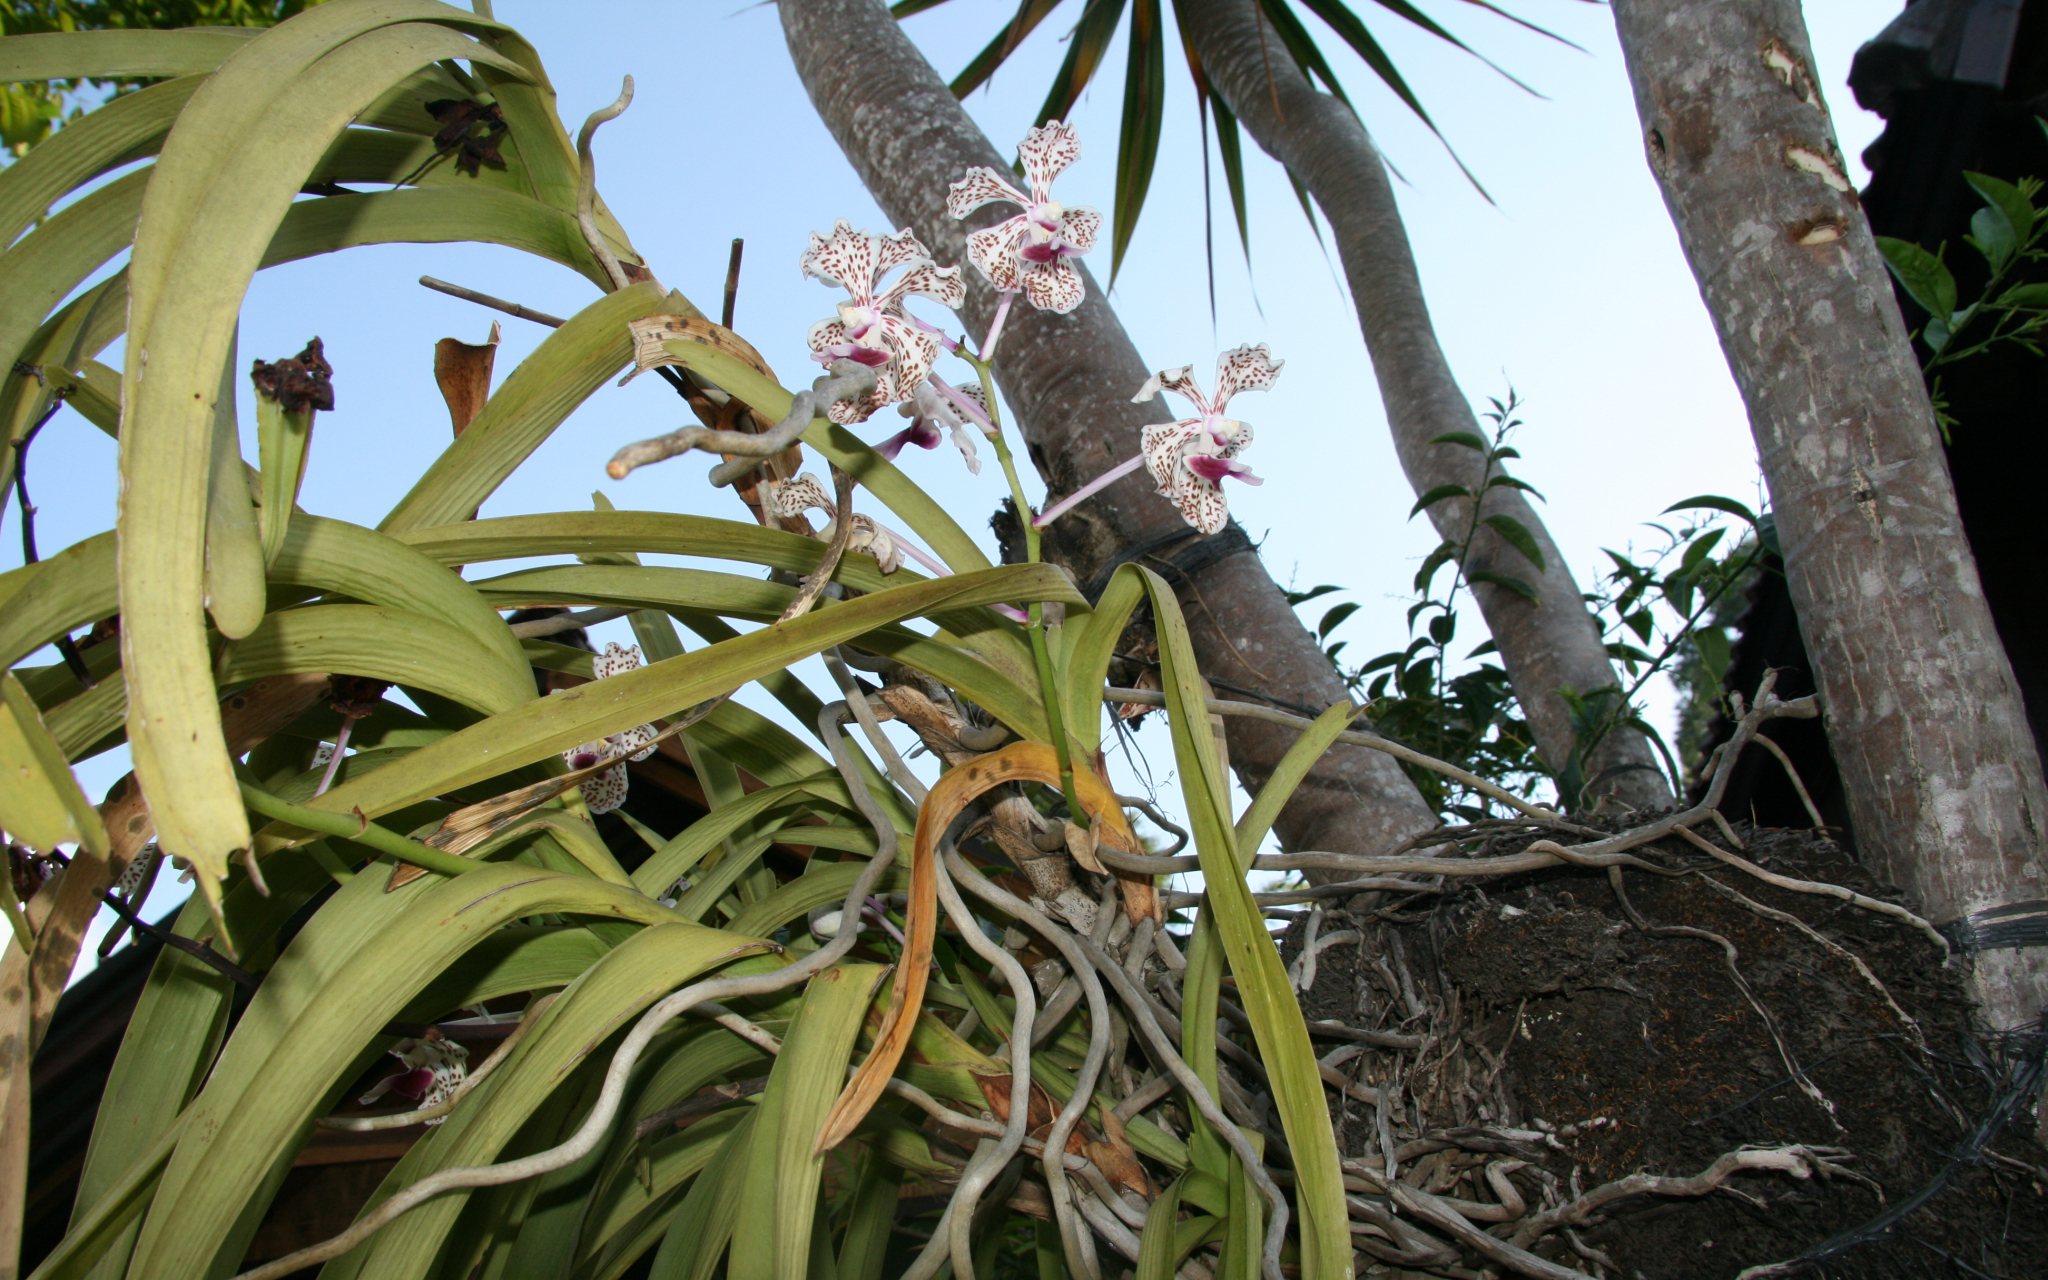 Orchidée cymbidium pendulaire dans un panier suspendu dans la véranda.